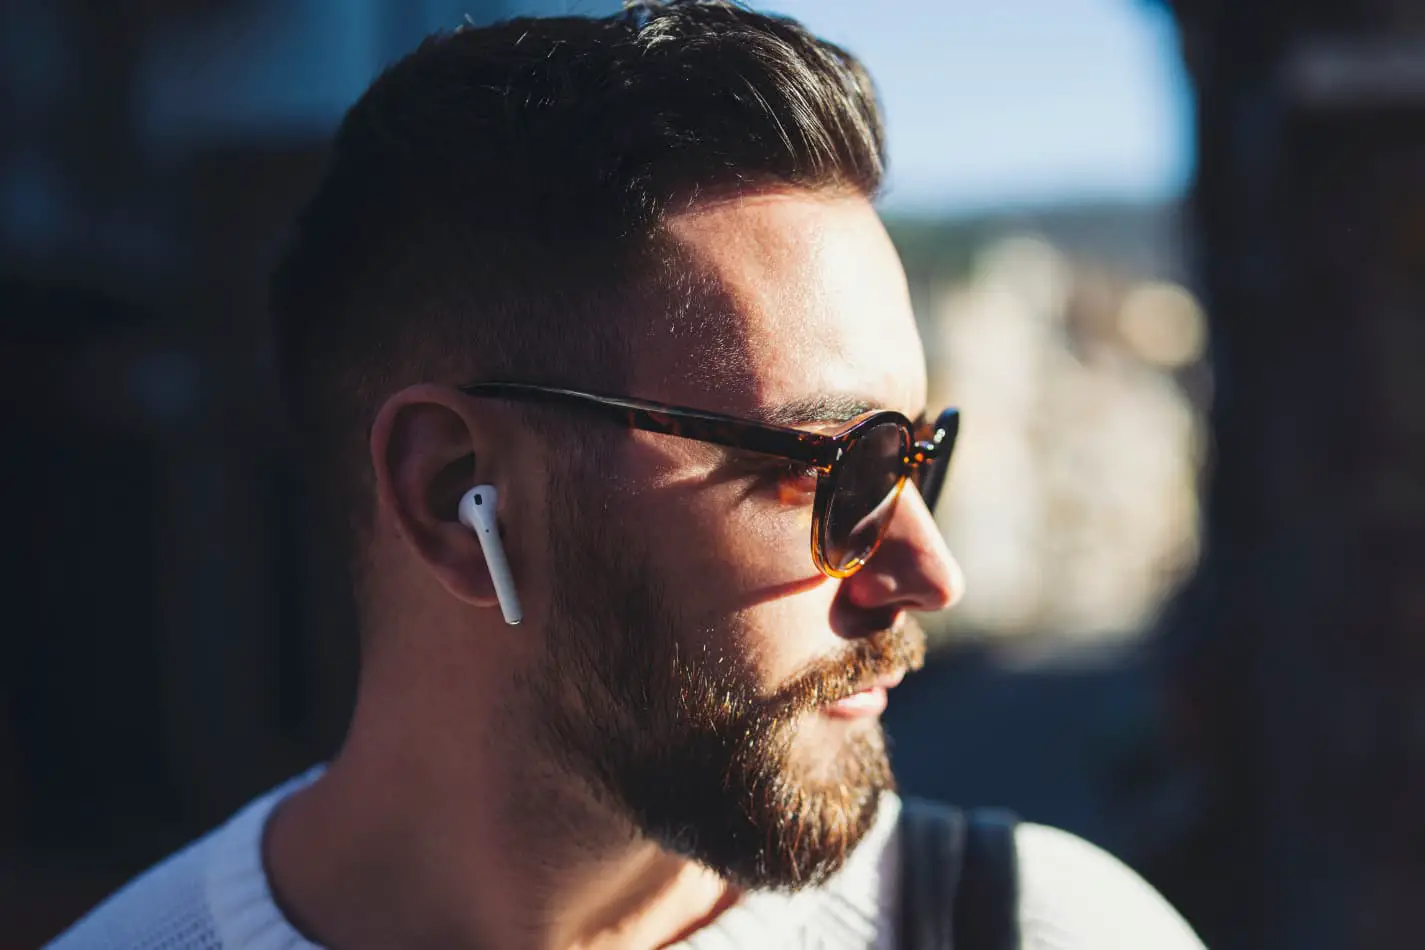 Choosing Headphones: Over-Ear vs On-Ear vs Earbuds vs In-Ear